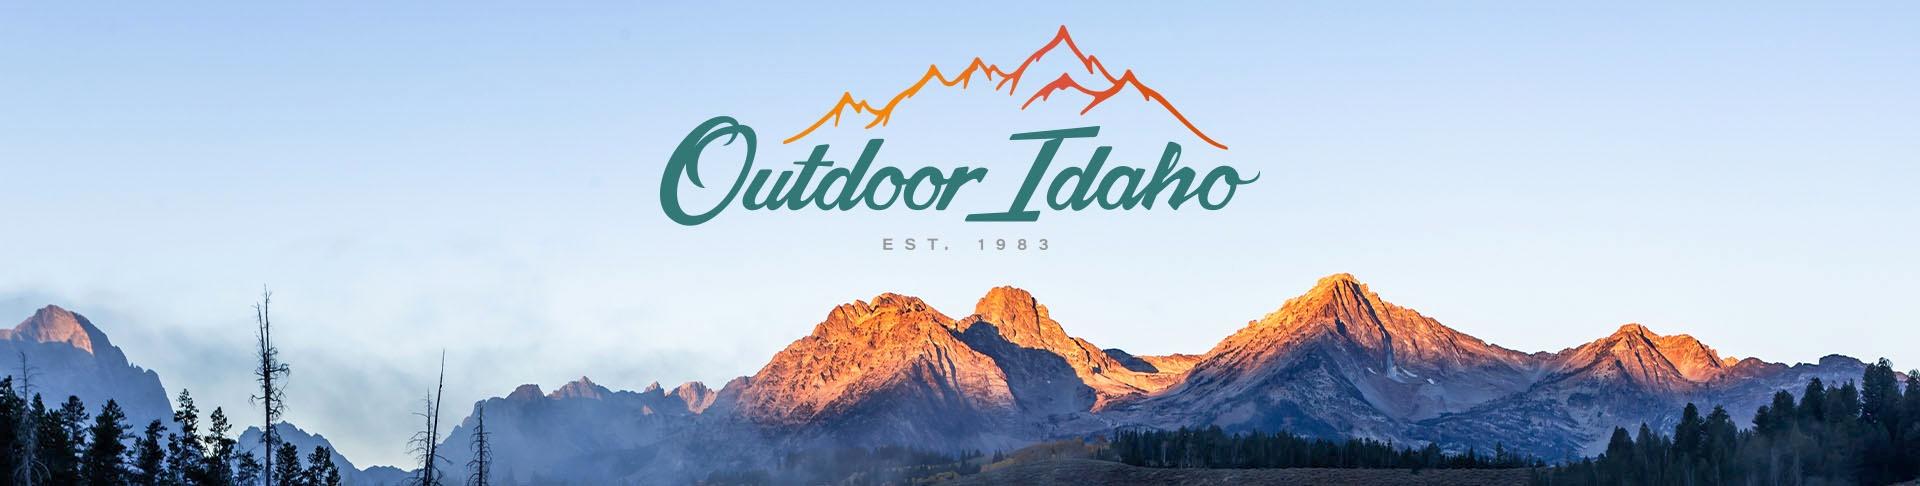 Outdoor Idaho banner